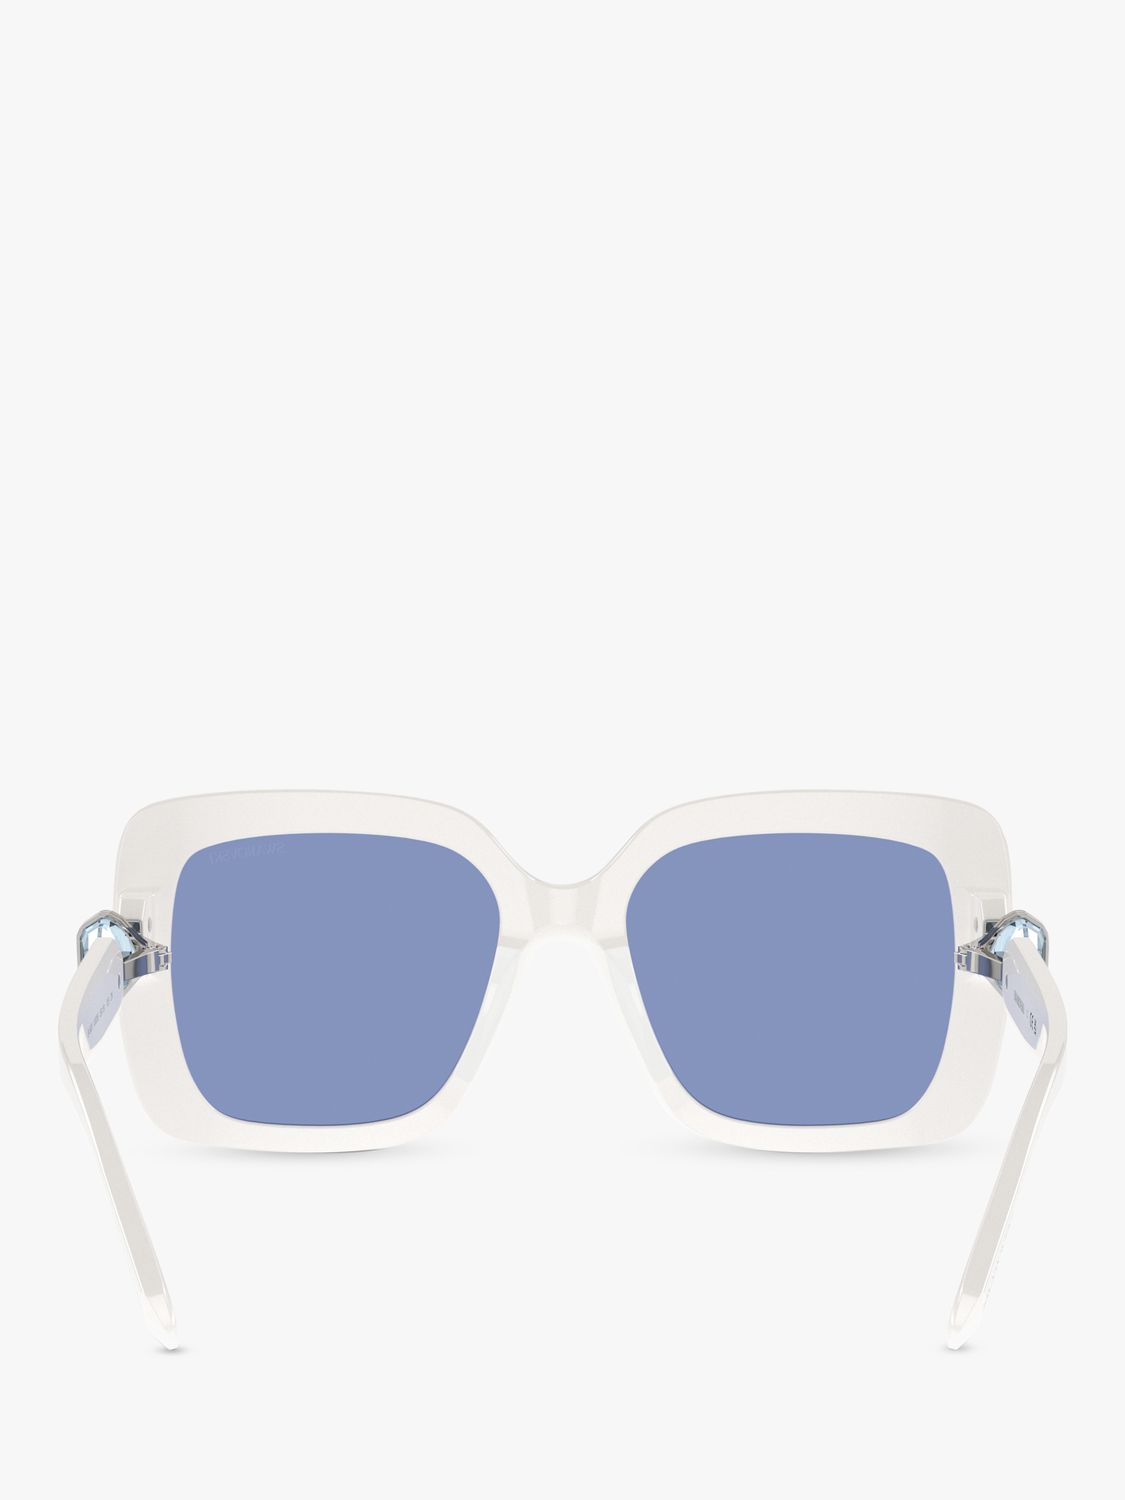 Swarovski SK6001 Women's Square Sunglasses, White/Blue